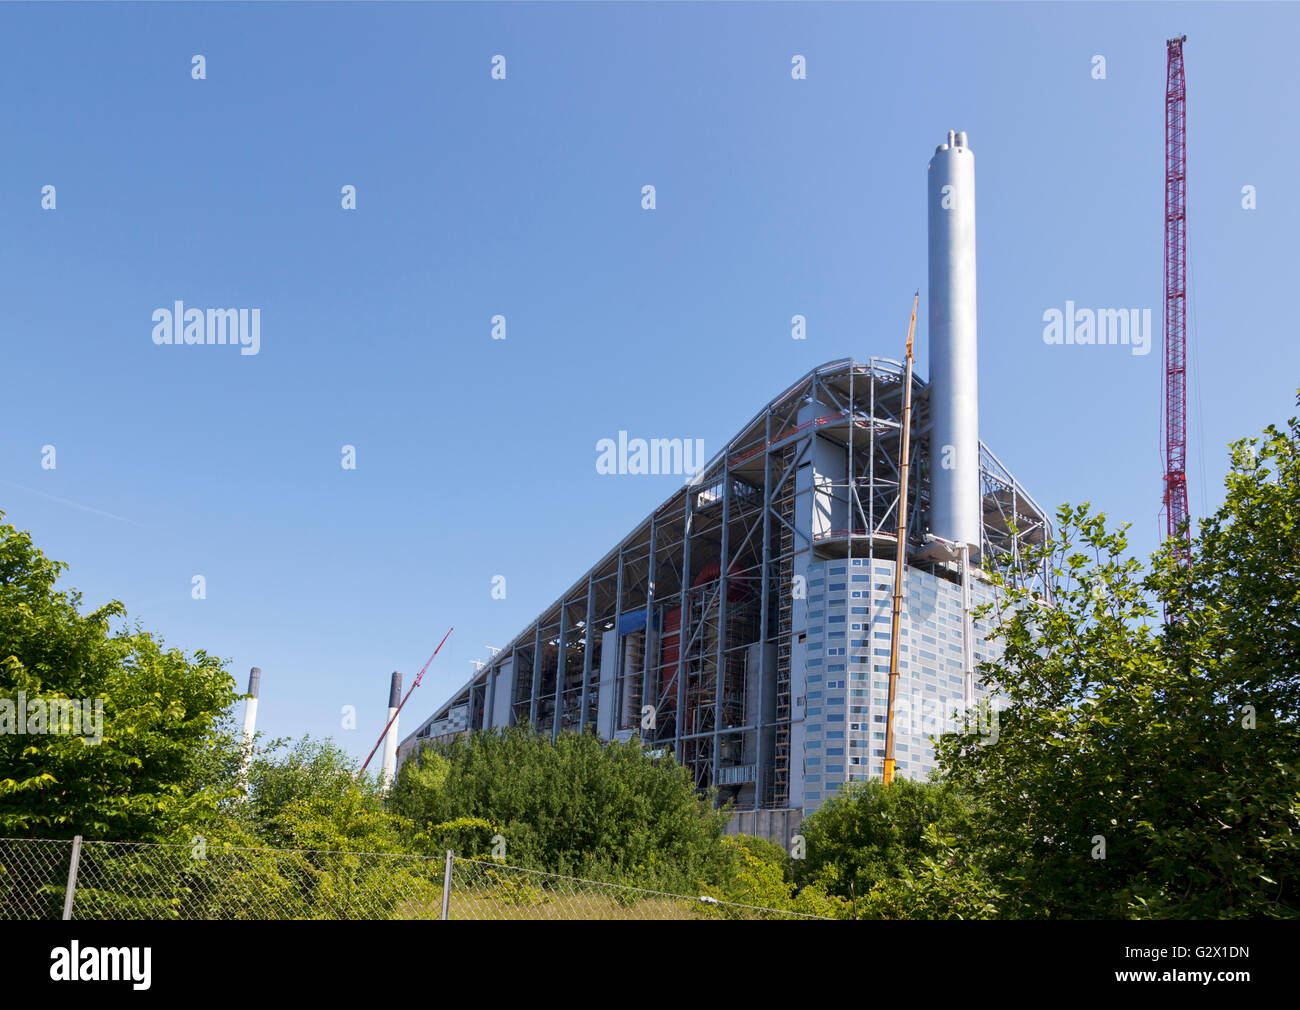 La nueva planta eléctrica Amager Slope, CopenHill y Waste-to-Energy, diseñada por Bjarke Ingels, ESTÁ tomando forma y se abrirá en 2017. Copen-colina. Foto de stock